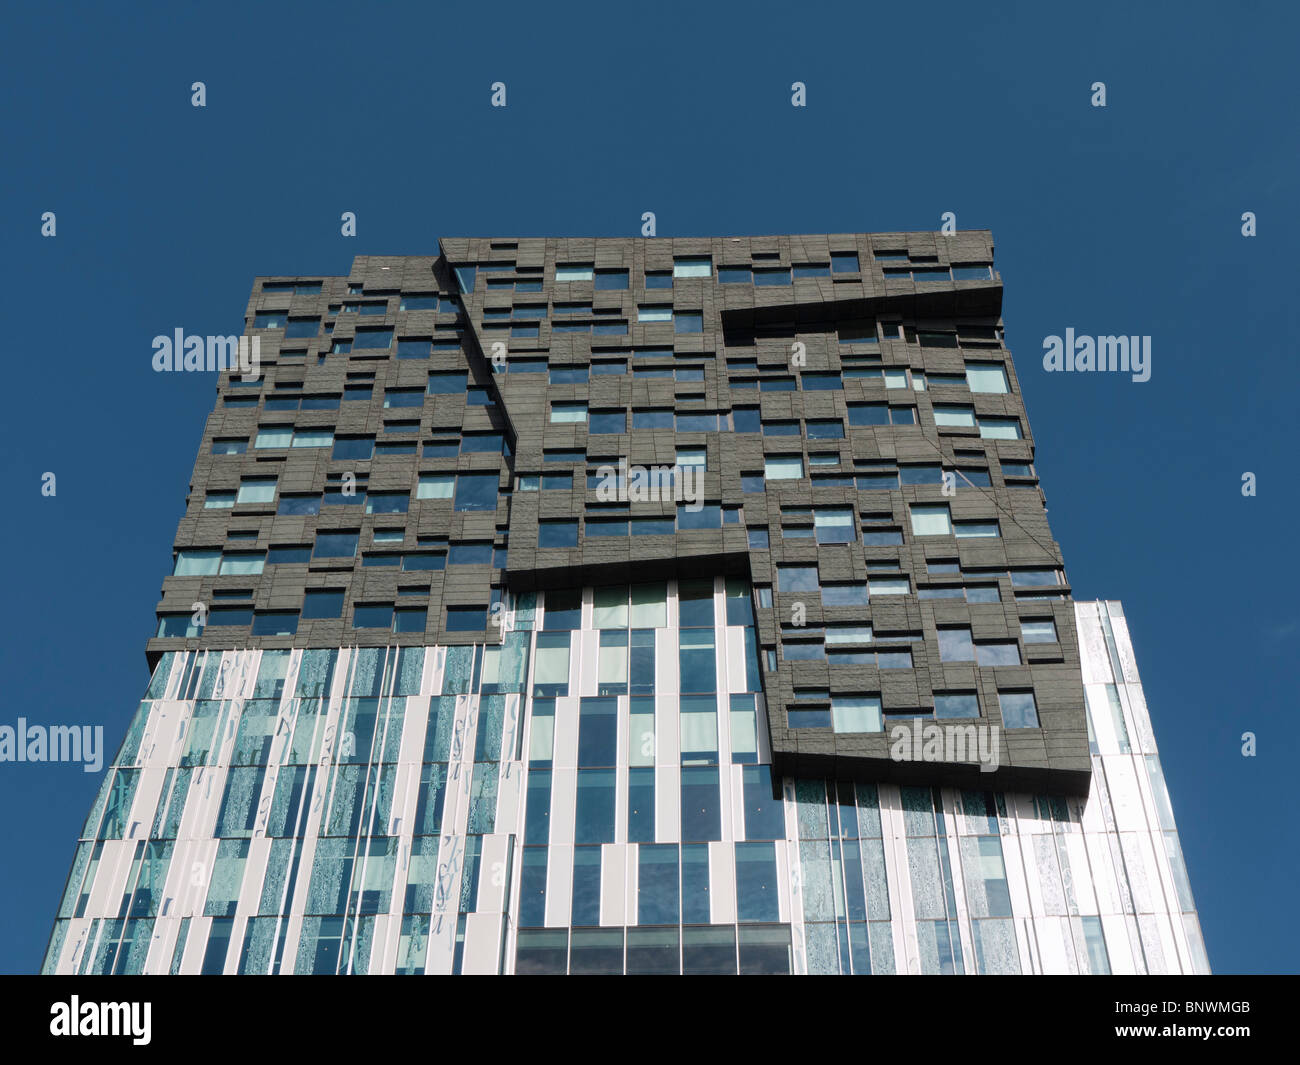 Neuen Büroturm am neuen Immobilienentwicklung Architekten Erick van Egeraat genannt Mahler4 in Amsterdam Süd Niederlande Stockfoto